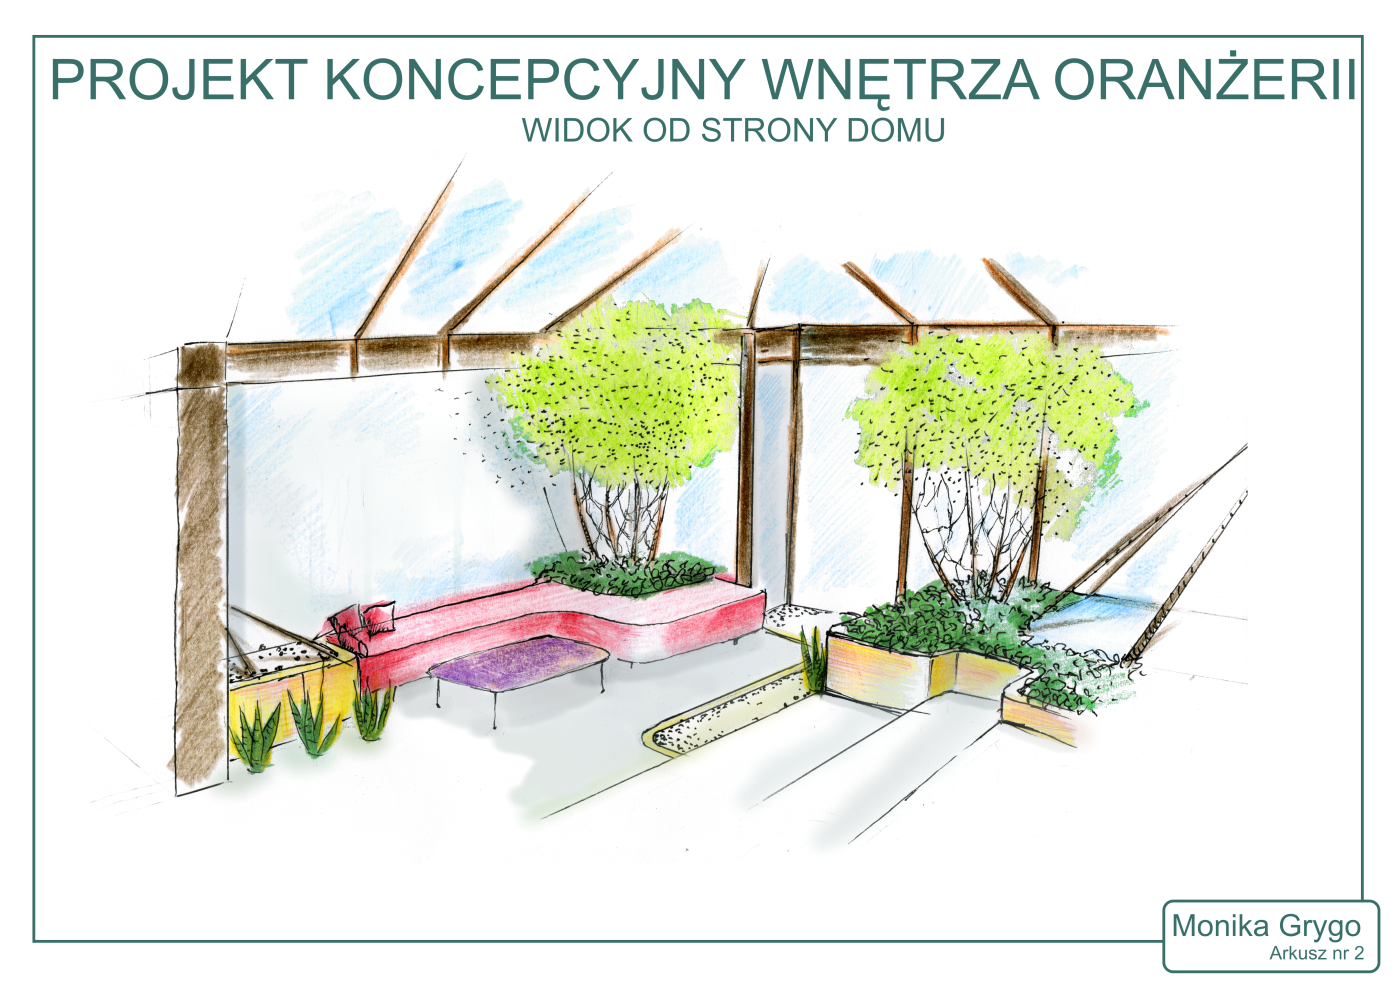 study concept of orangery